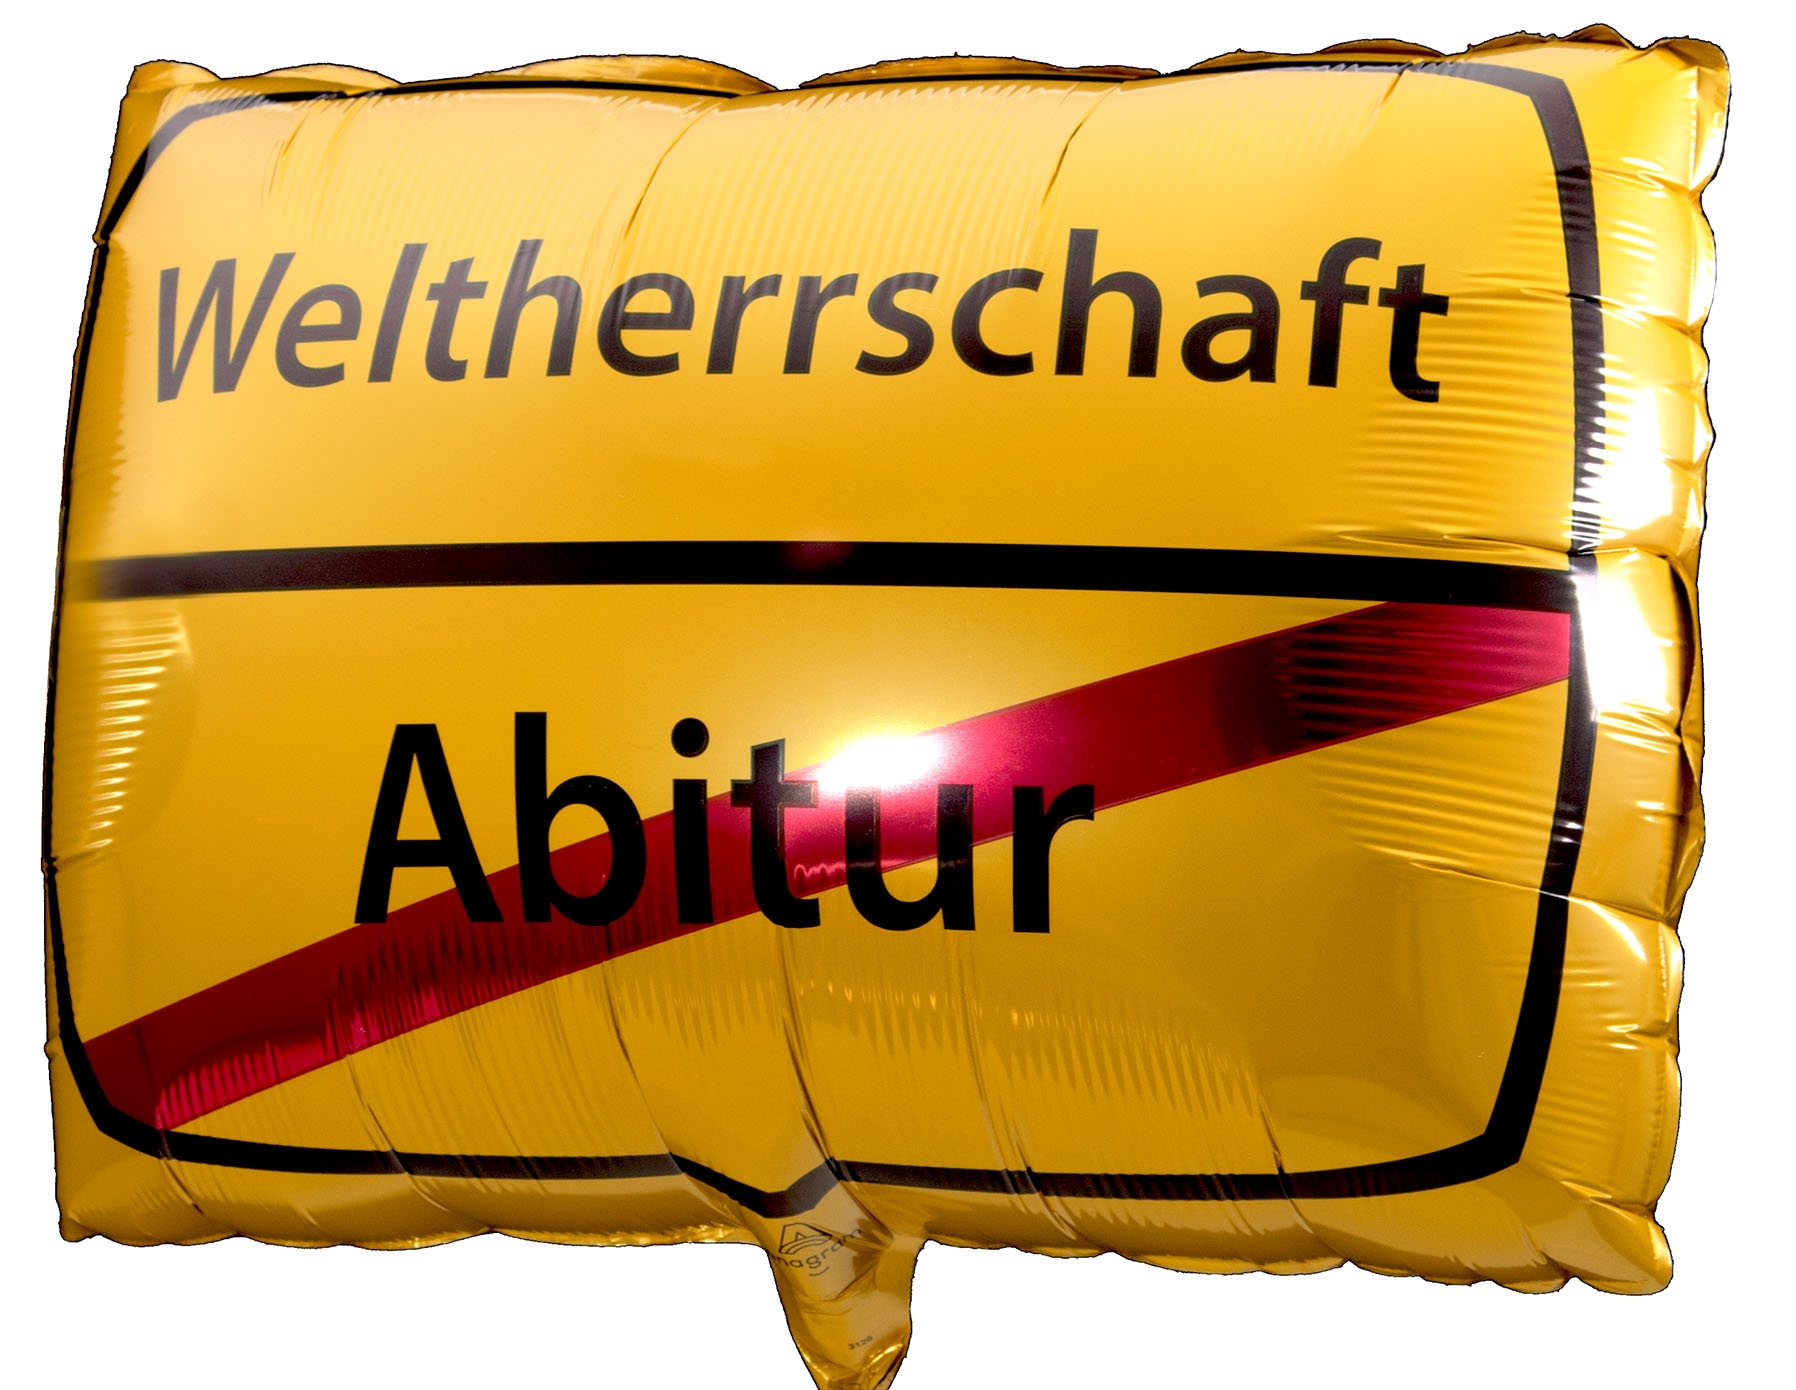 Folienballon "Abitur - Weltherrschaft" 43x30 cm